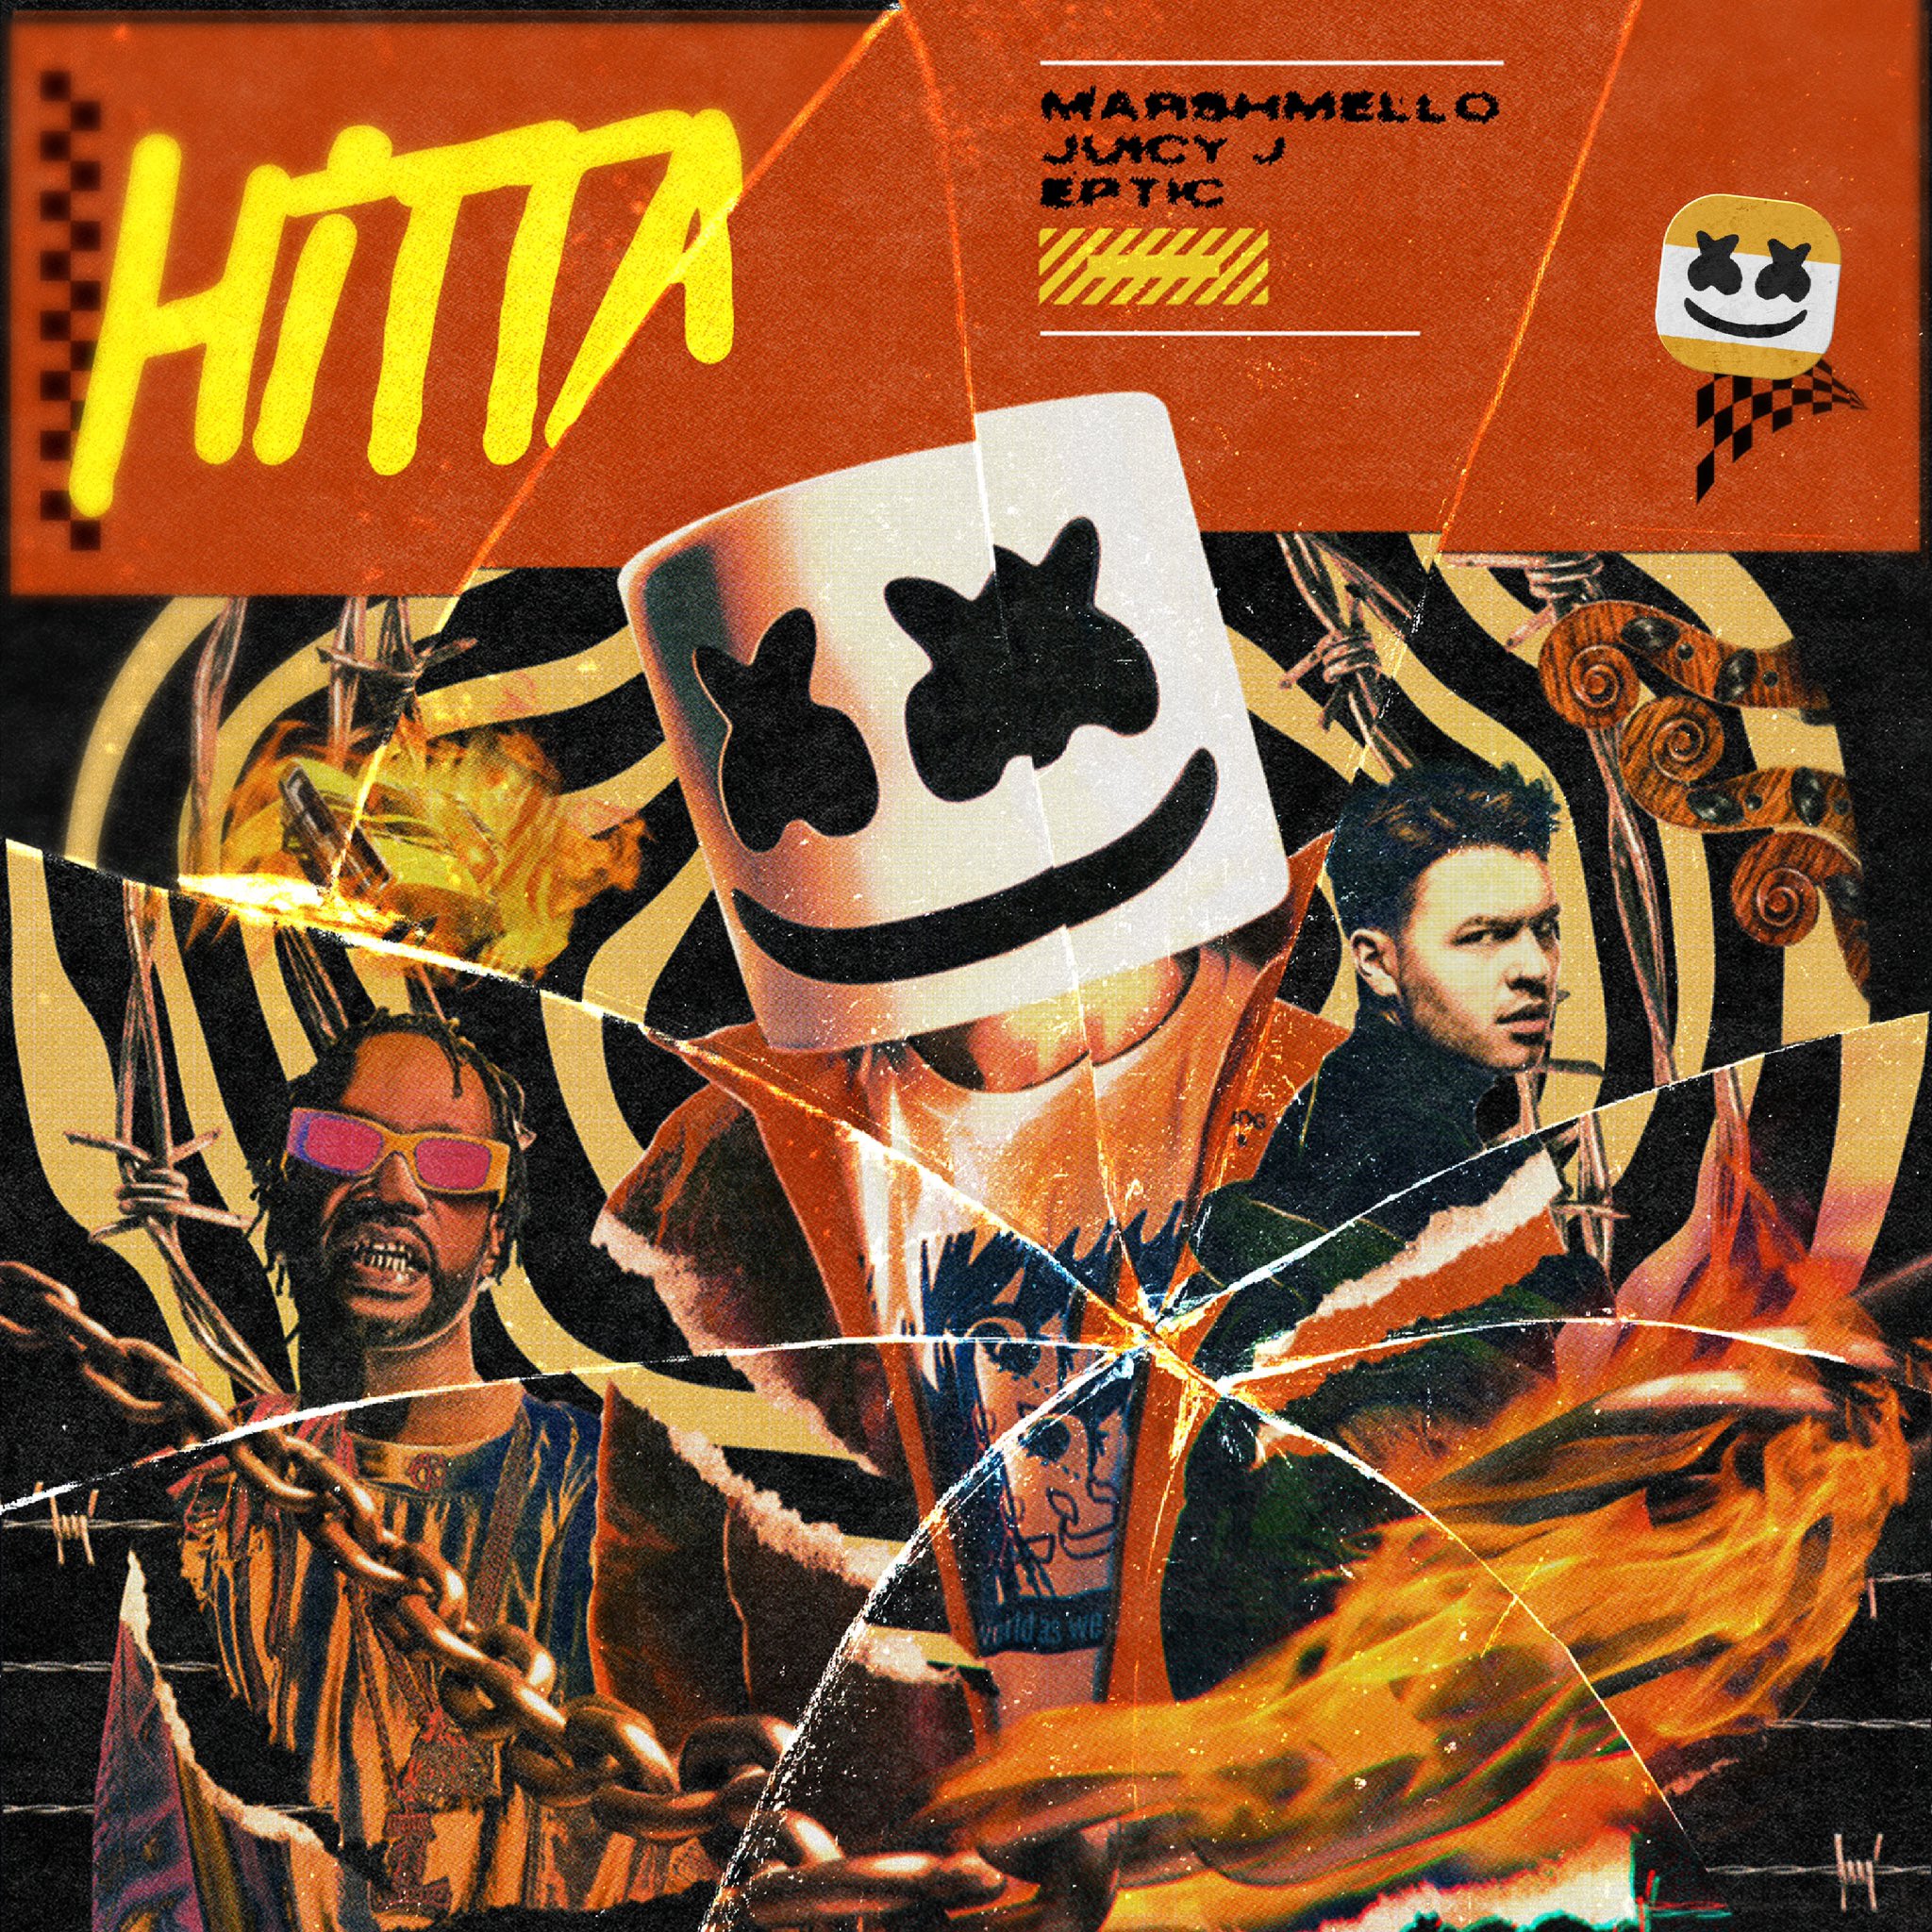 Marshmello une fuerzas con Juicy J y Eptic para el lanzamiento de ‘Hitta’